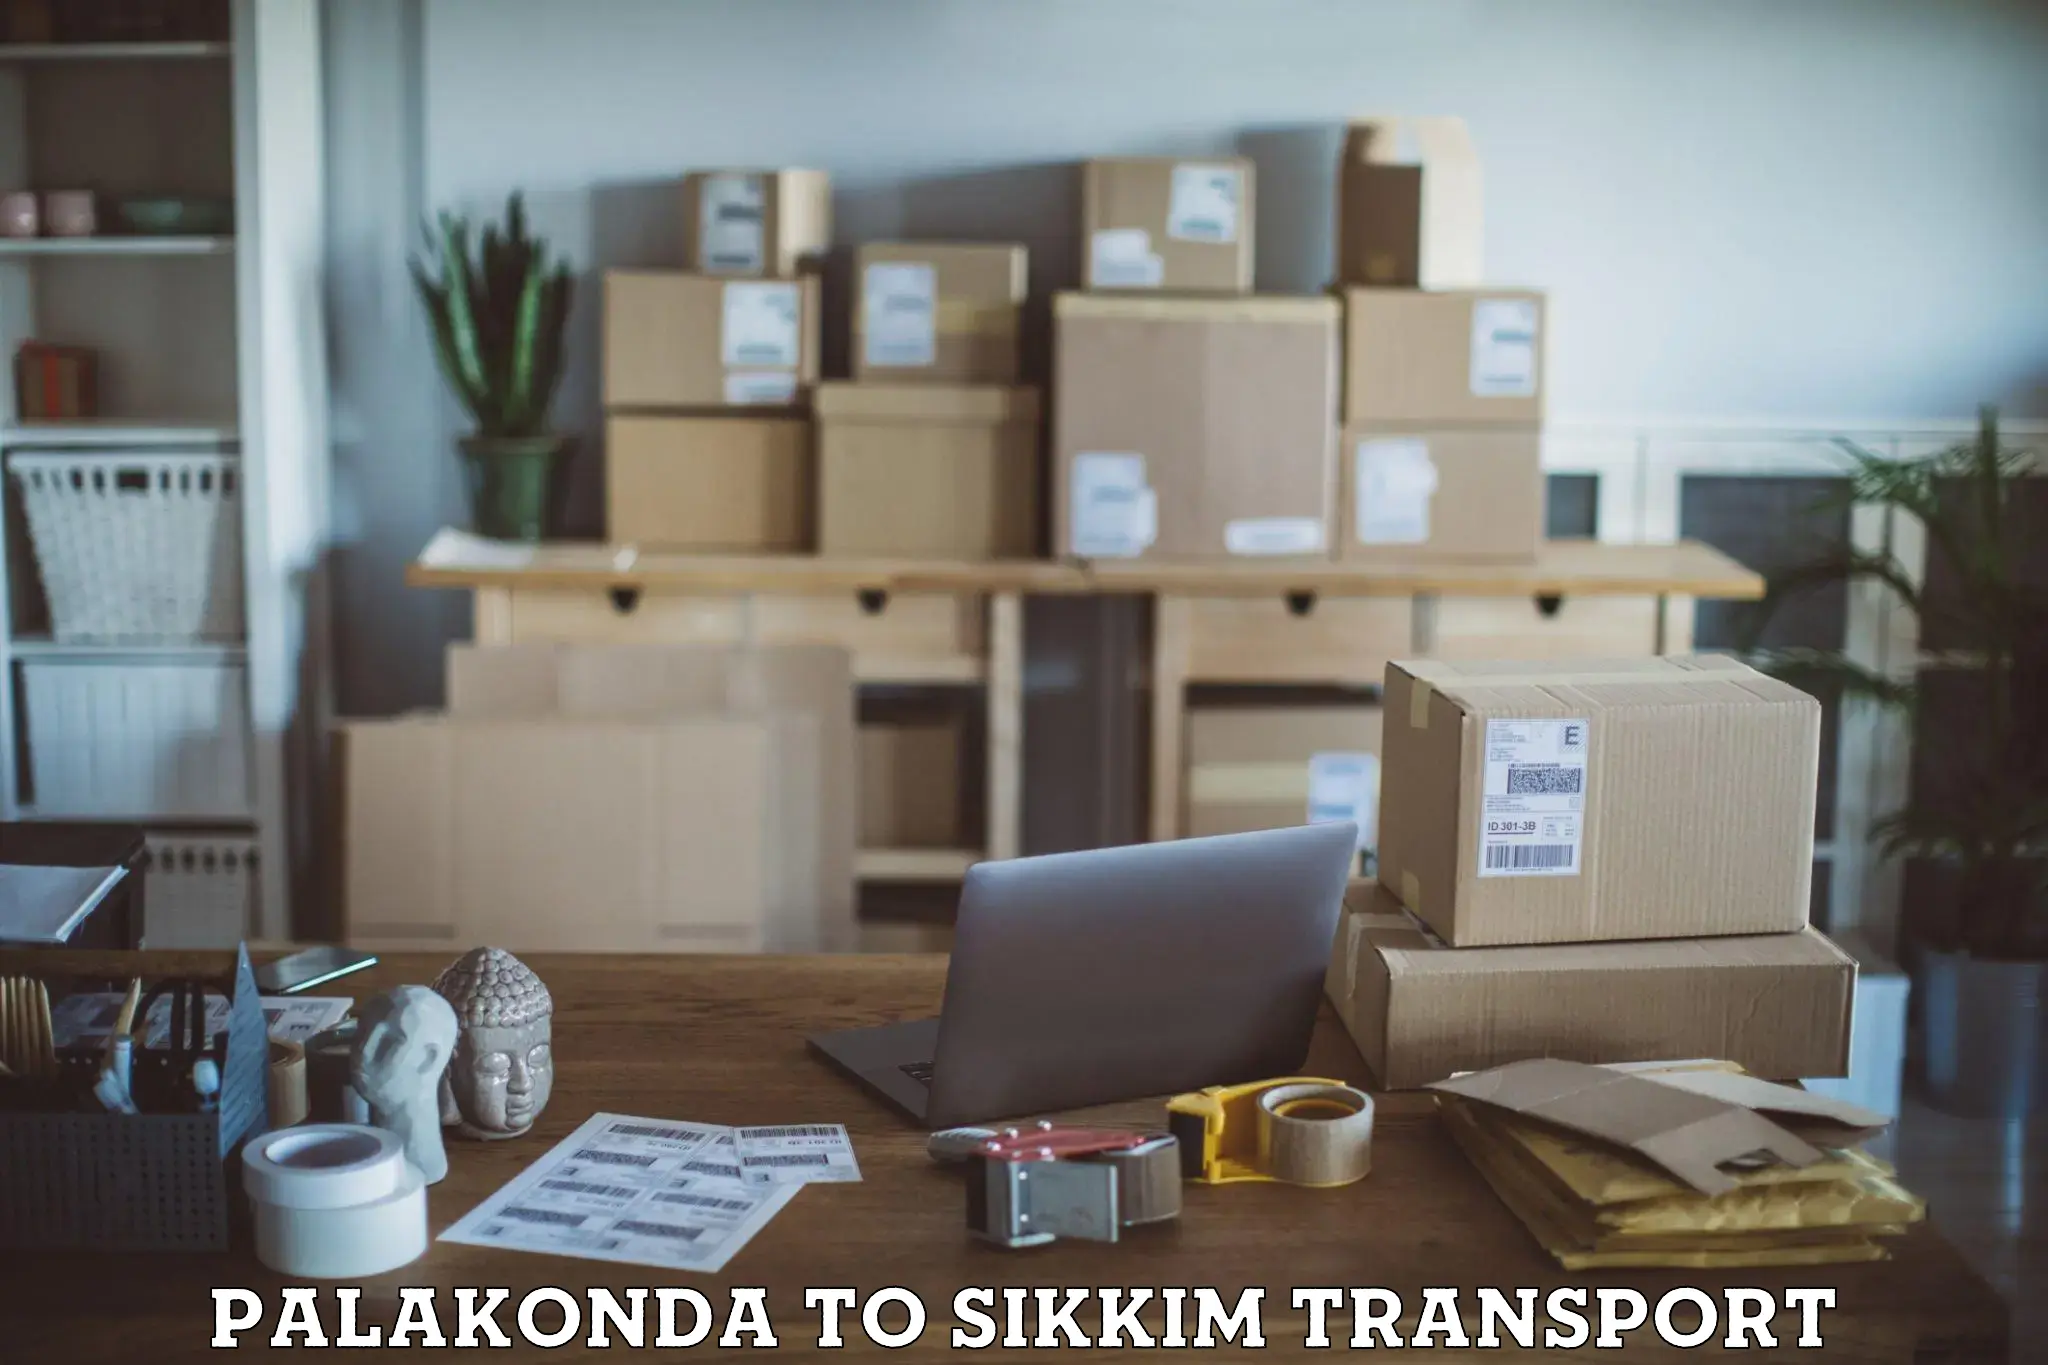 Bike shipping service Palakonda to Pelling